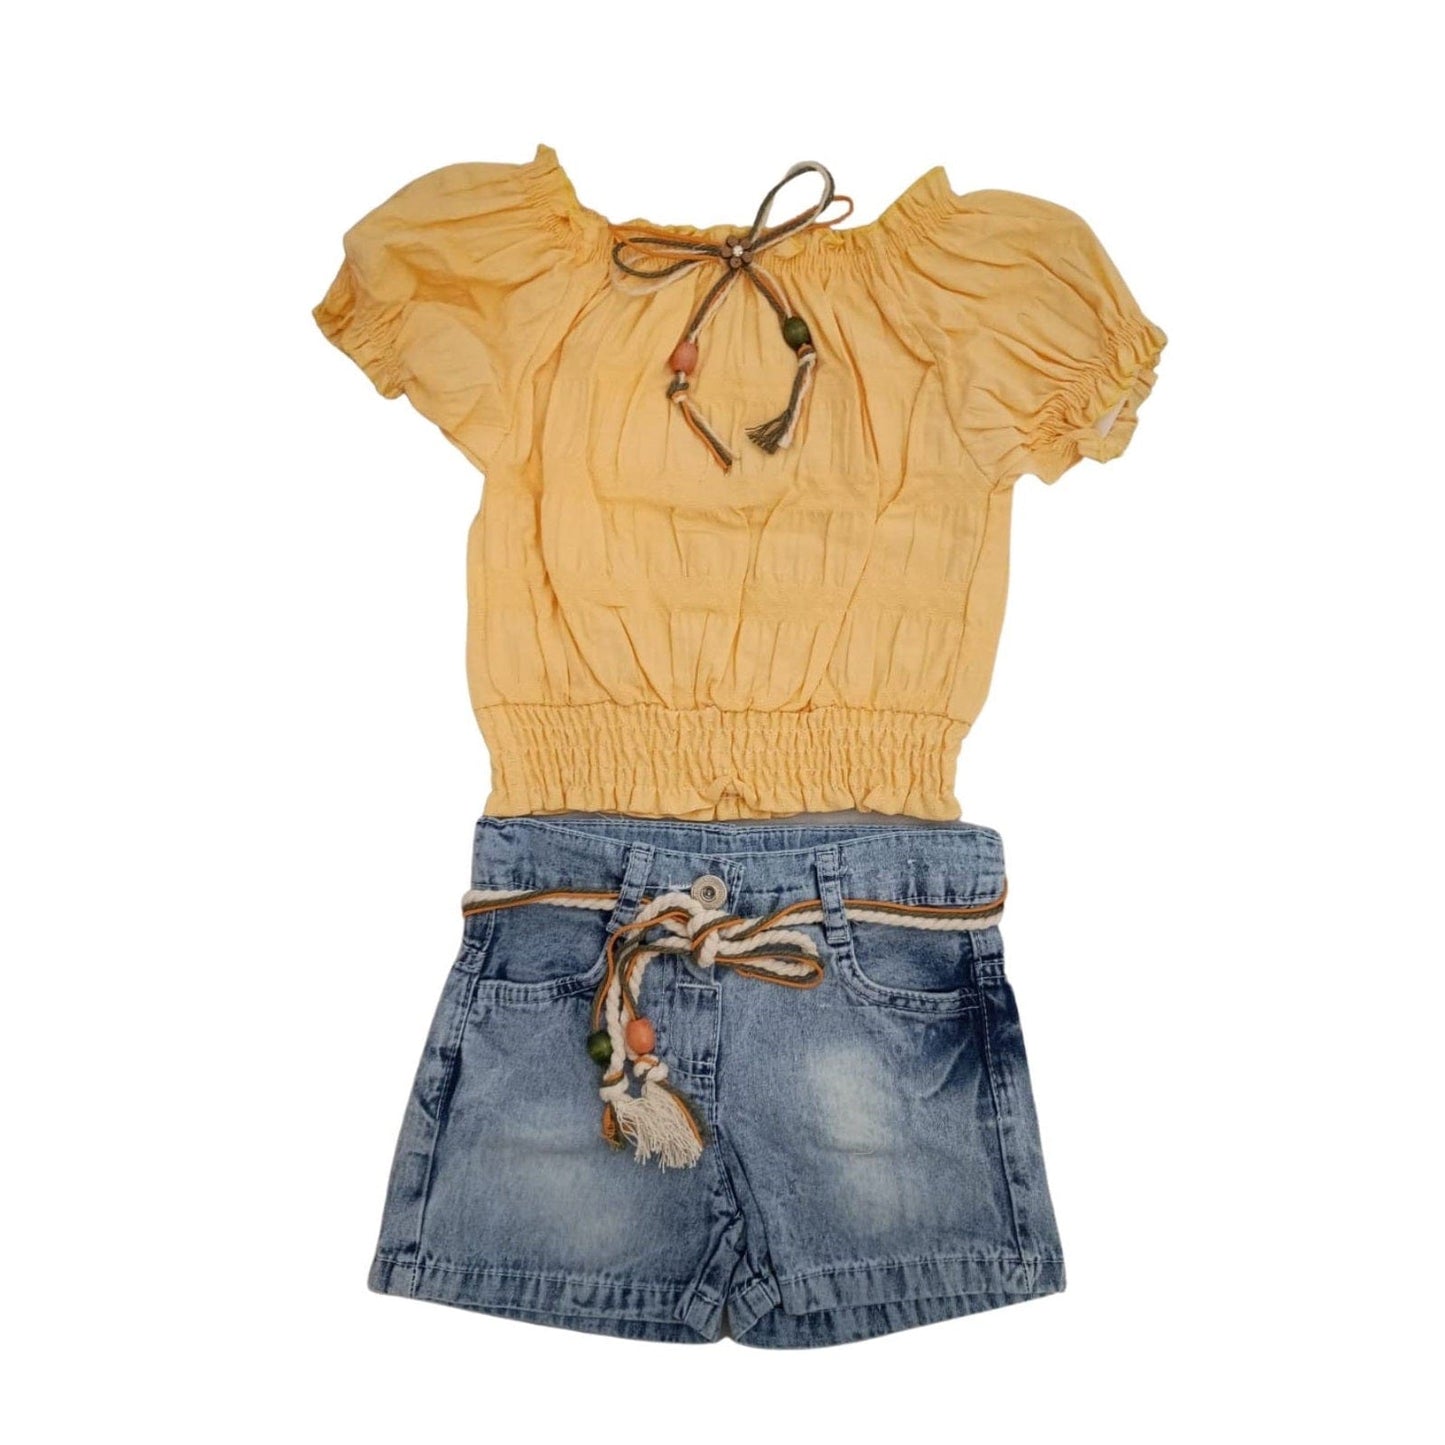 Forever Cute Shorts & Top - Peach - Laadlee